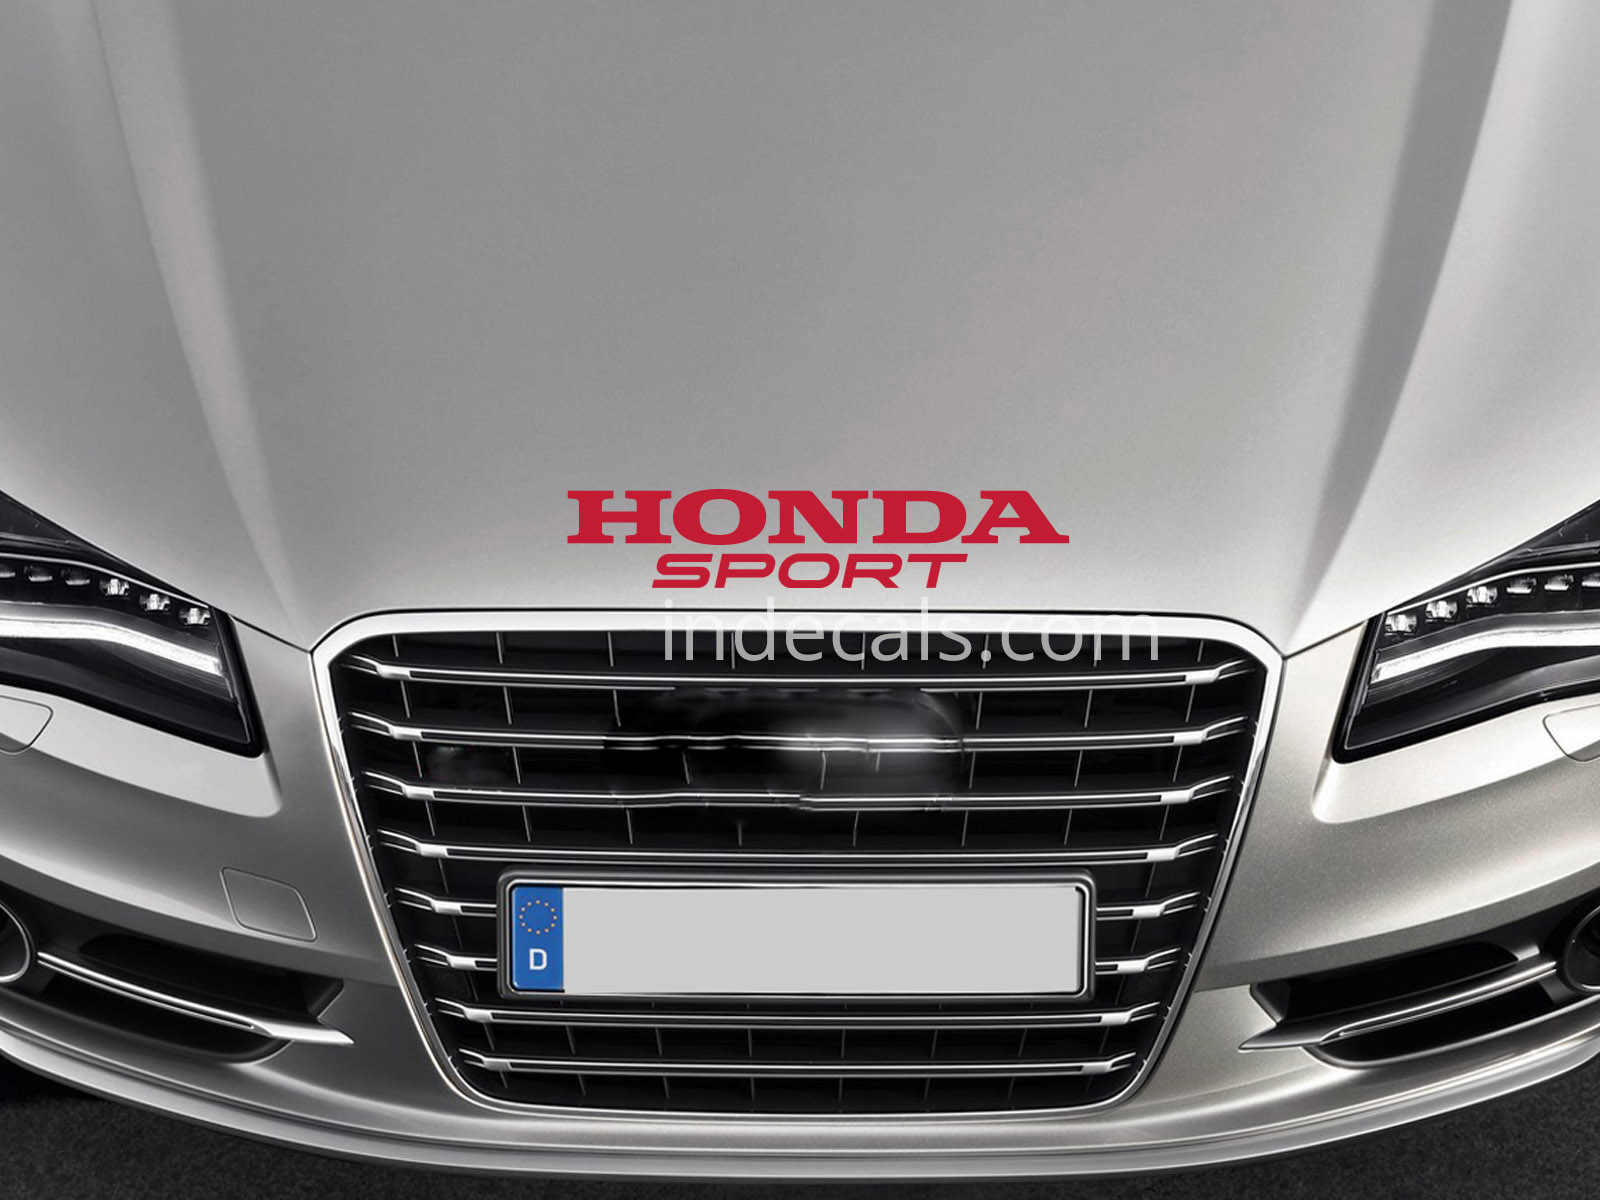 1 x Honda Sport Sticker for Bonnet - Red